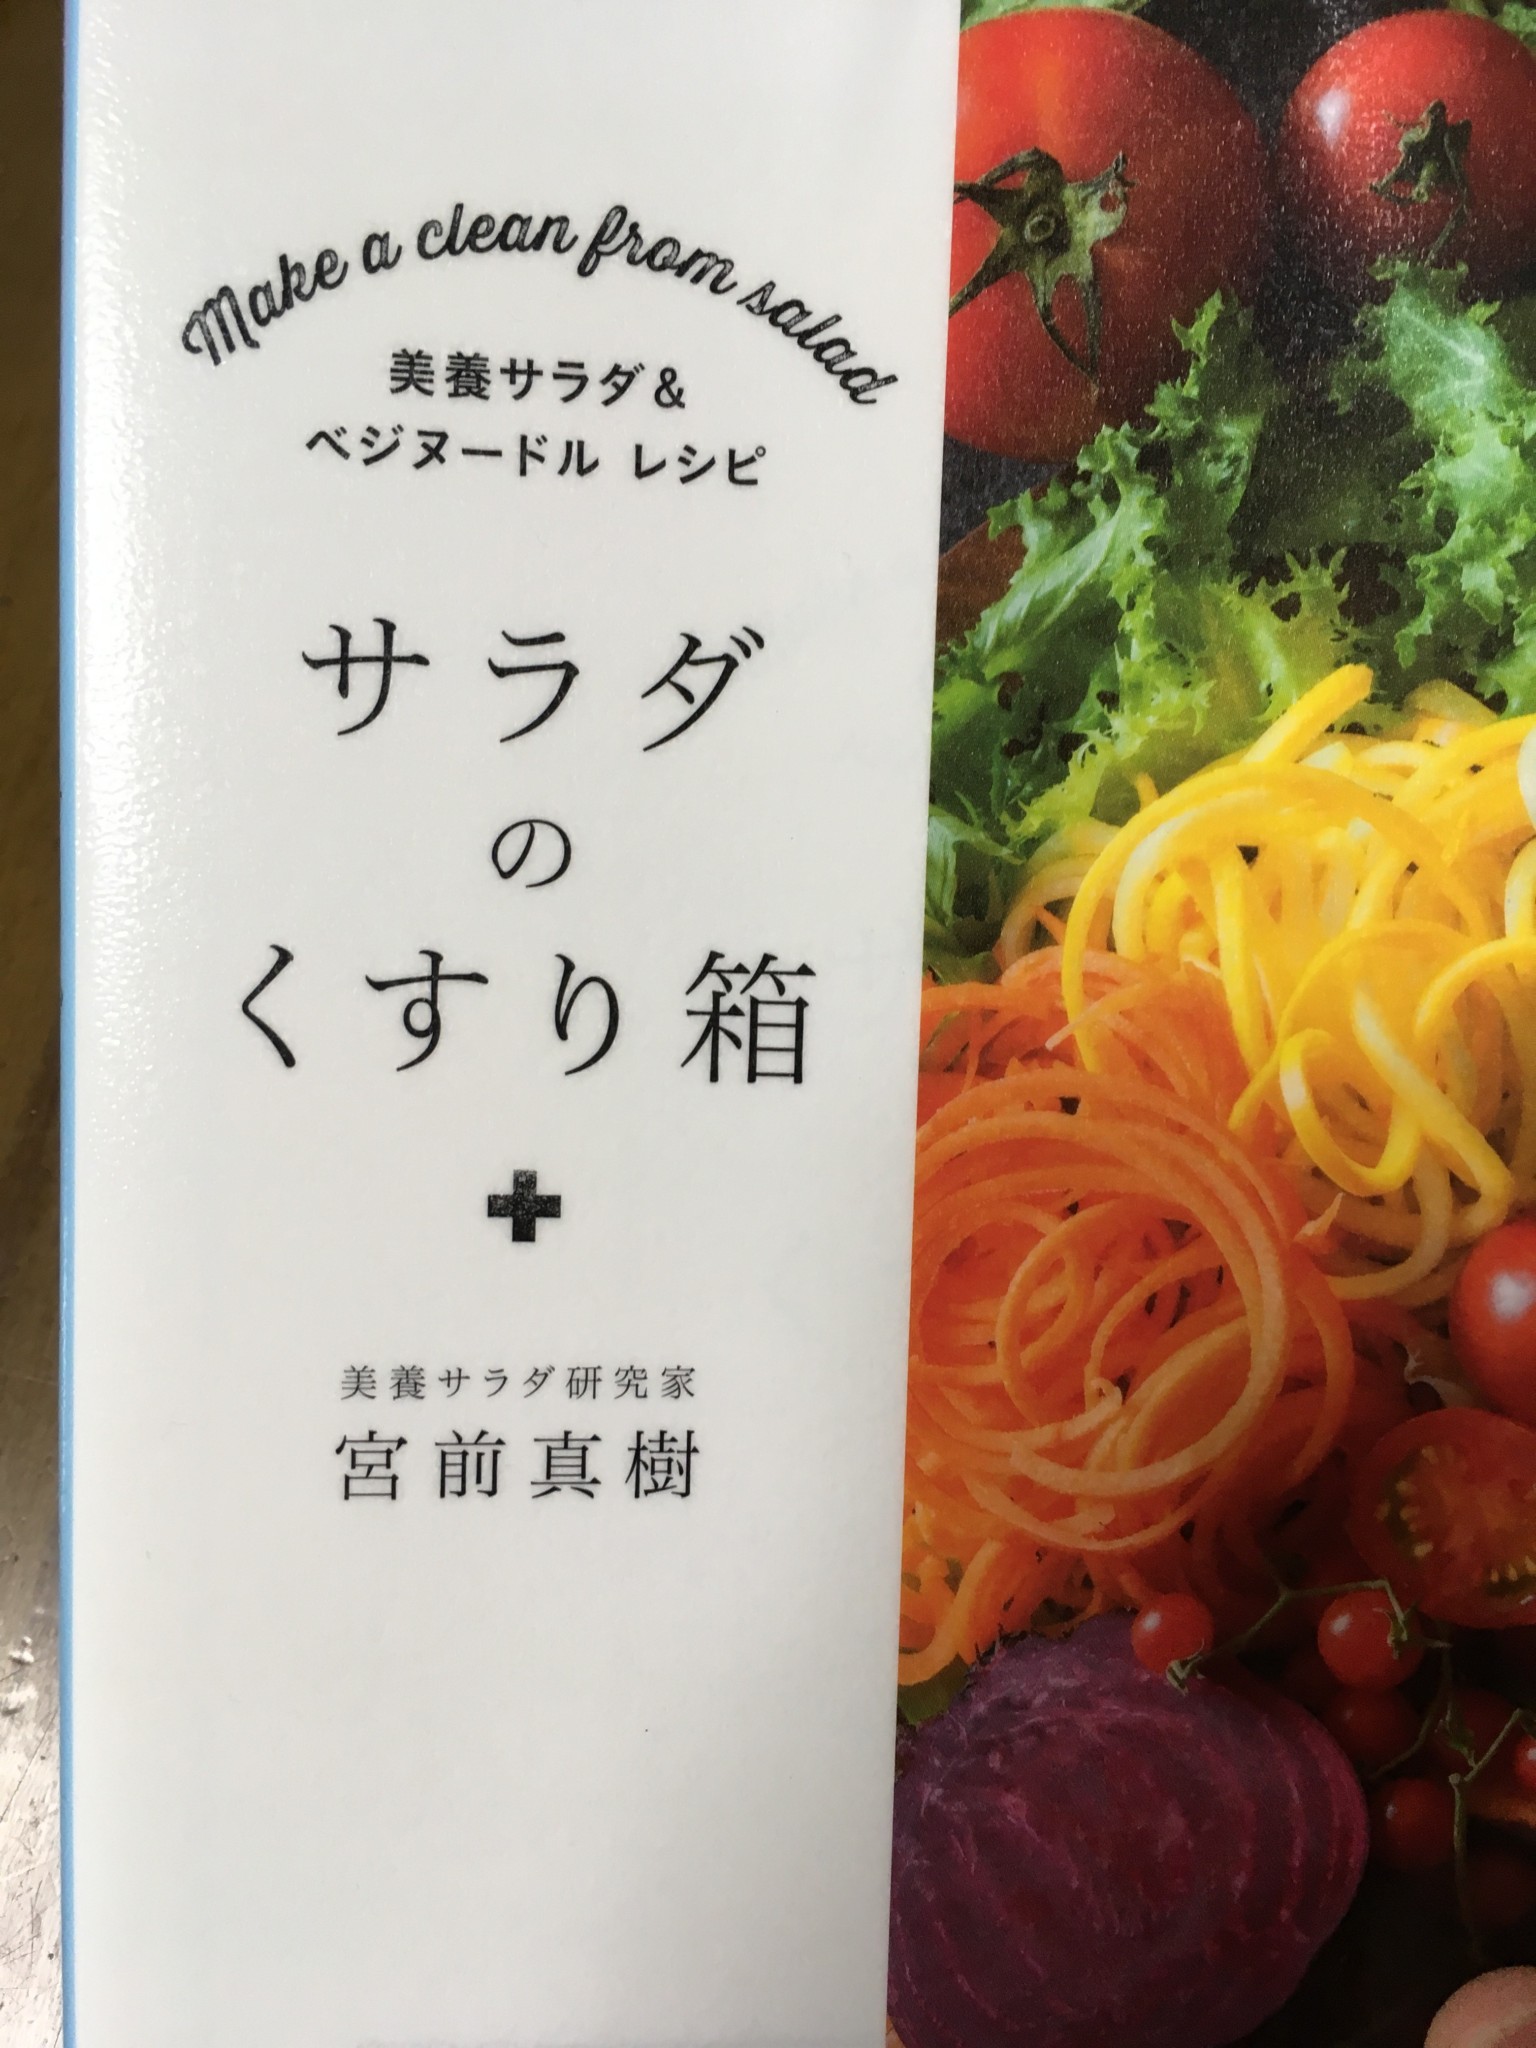 「サラダのくすり箱」という本